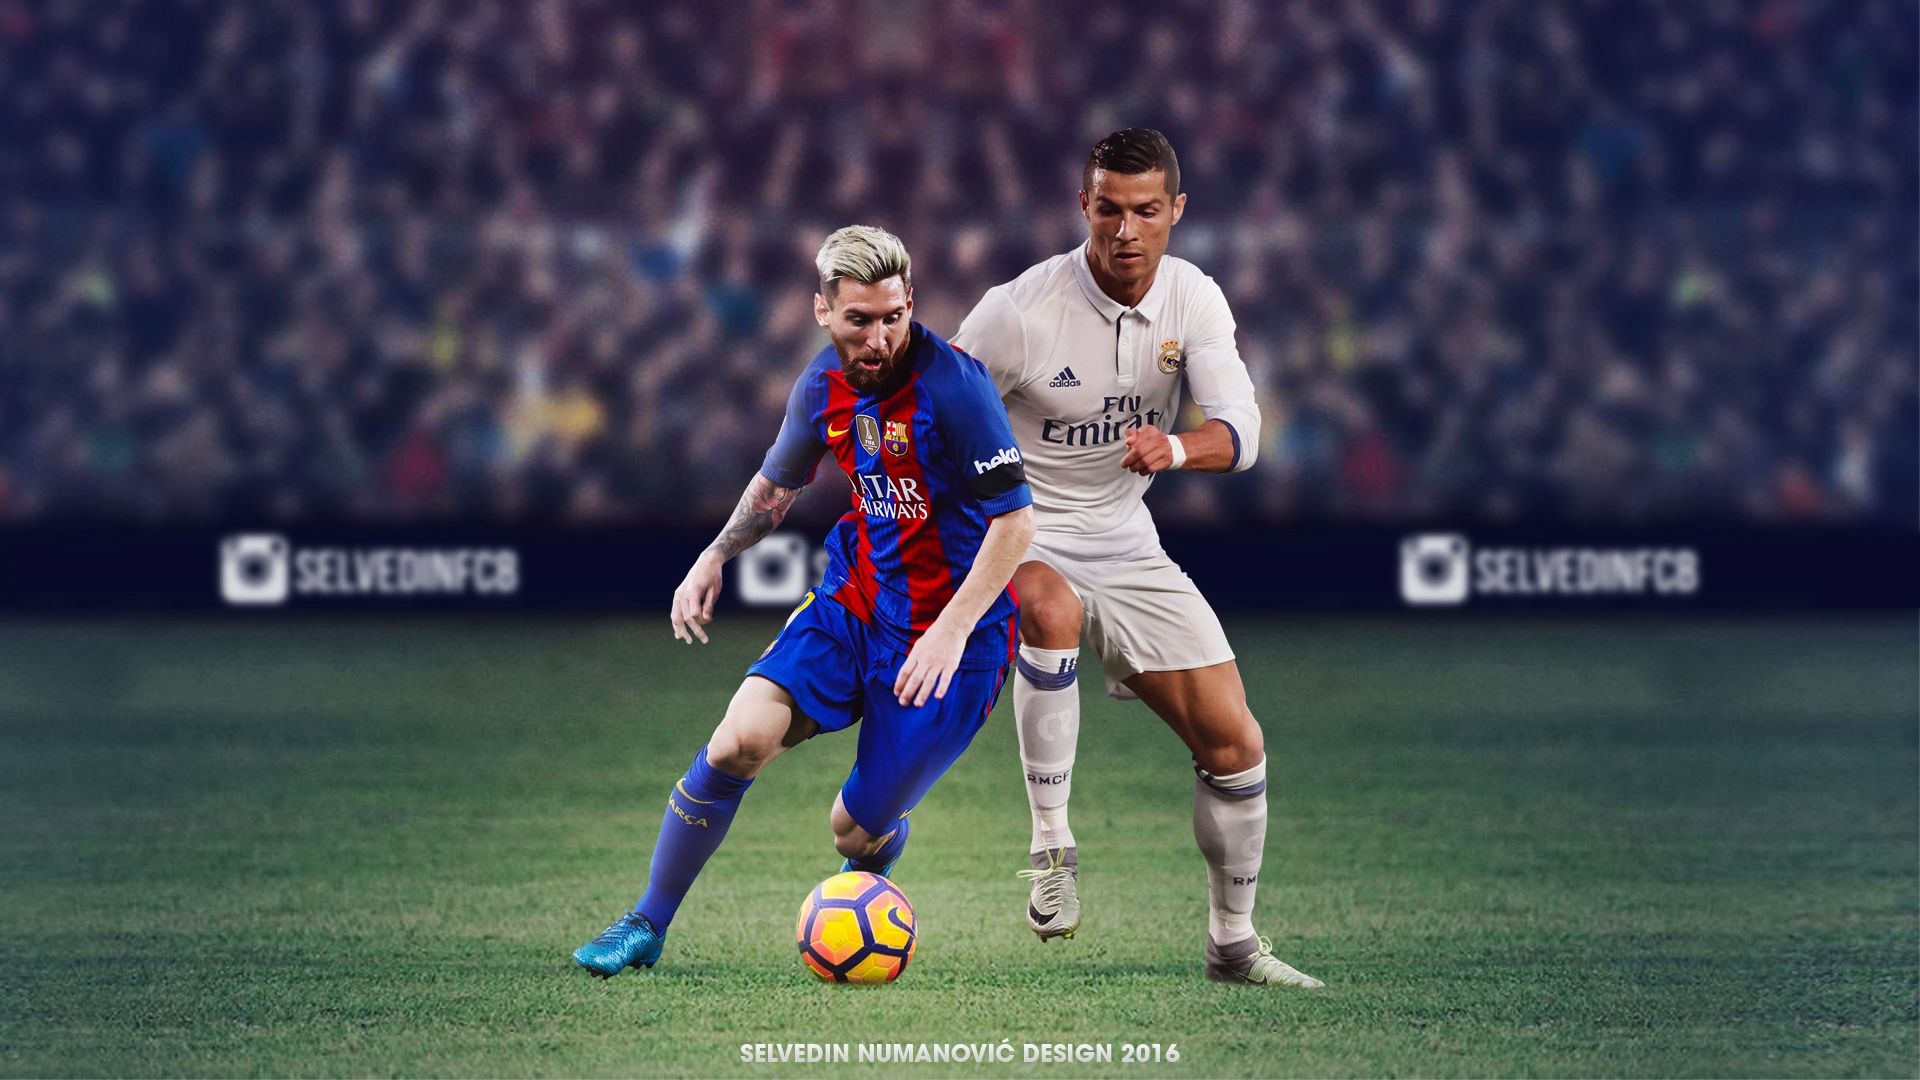 Hãy cùng chiêm ngưỡng những hình nền đẹp nhất về hai ngôi sao bóng đá nổi tiếng nhất thế giới là Ronaldo và Messi trên WallpaperDog. Đây là nơi tuyệt vời để bạn có thể tìm kiếm hình nền đẹp cho điện thoại hoặc máy tính của mình.